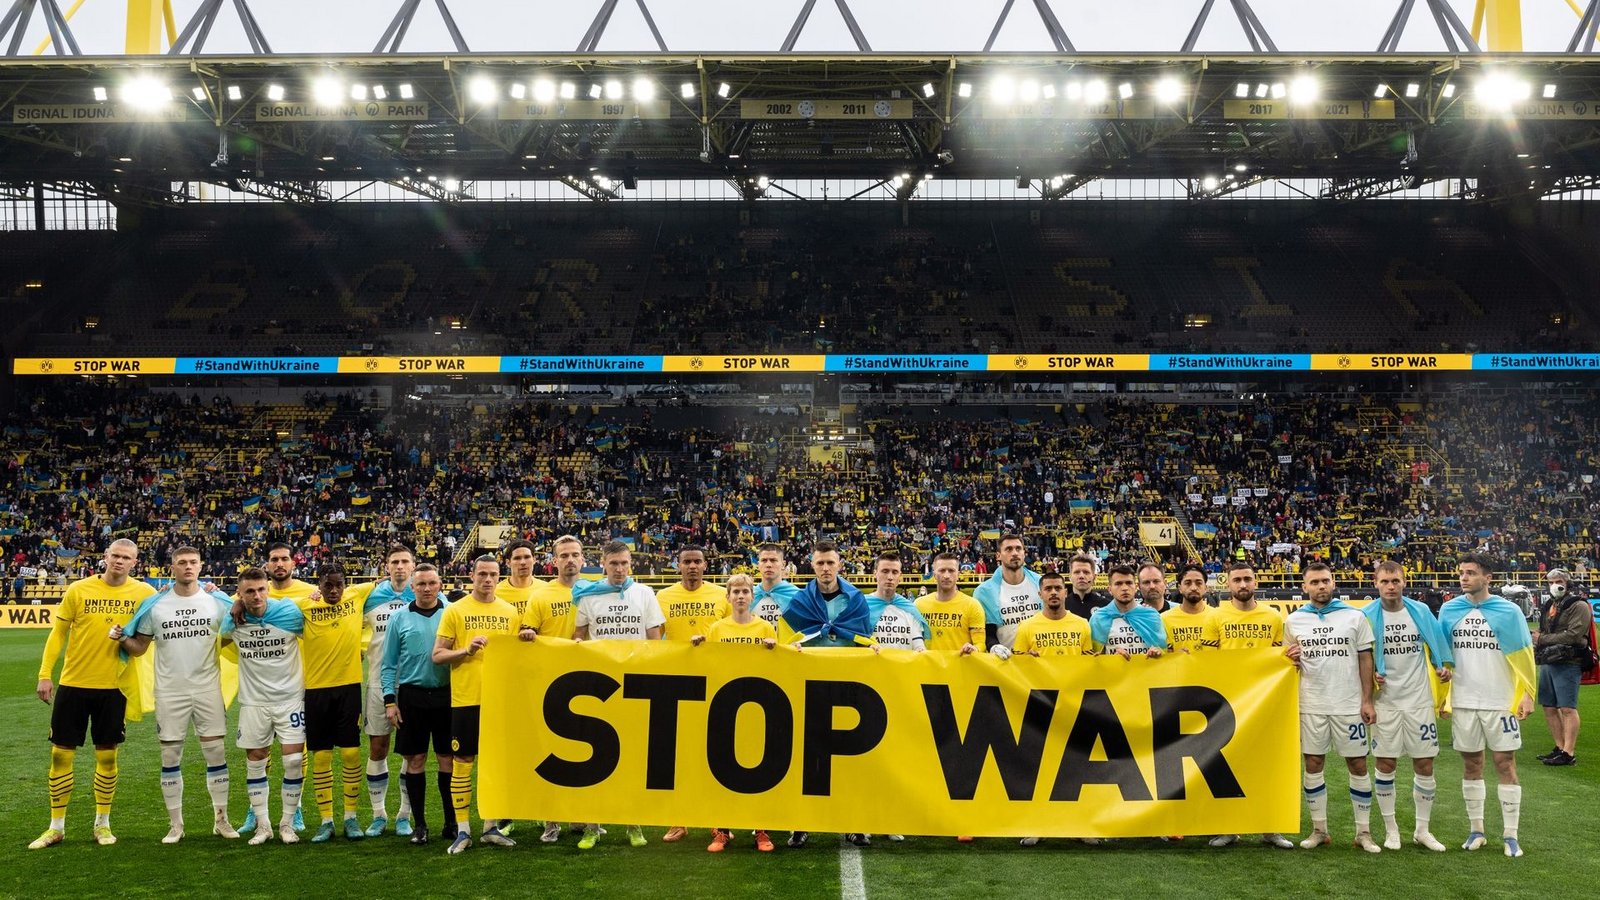 Vor dem Spiel geben beide Teams mit einem Banner ein Statement gegen den Krieg in der Ukraine ab.Foto: Bernd Thissen/dpa